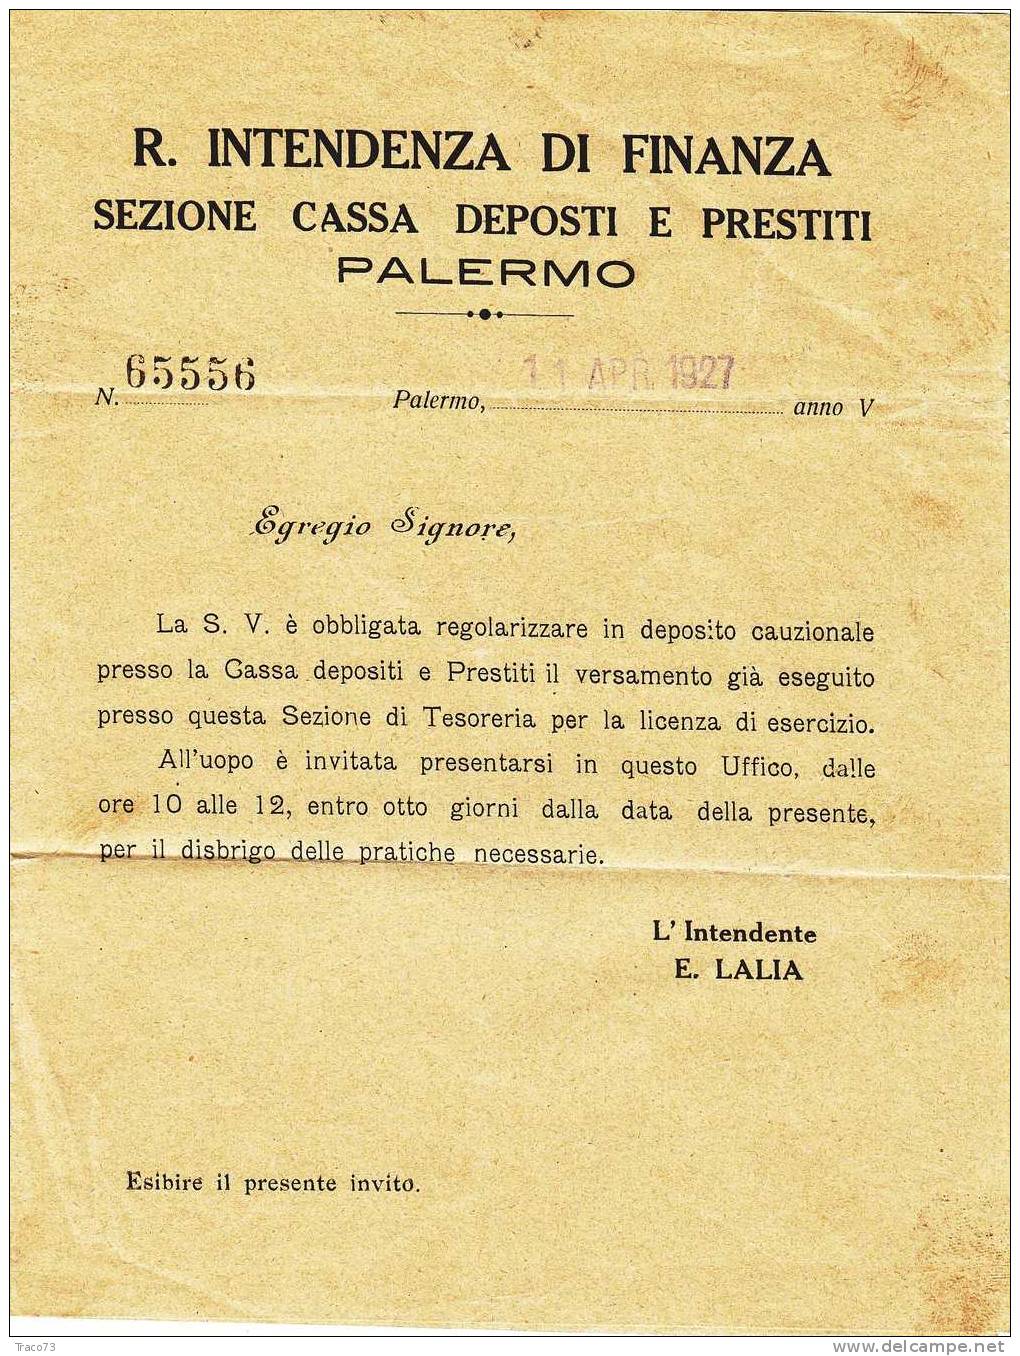 Franchigia / Palermo - Boccadifalco  - Intendenza Di Finanza  -  11.04.1927 - Franchise